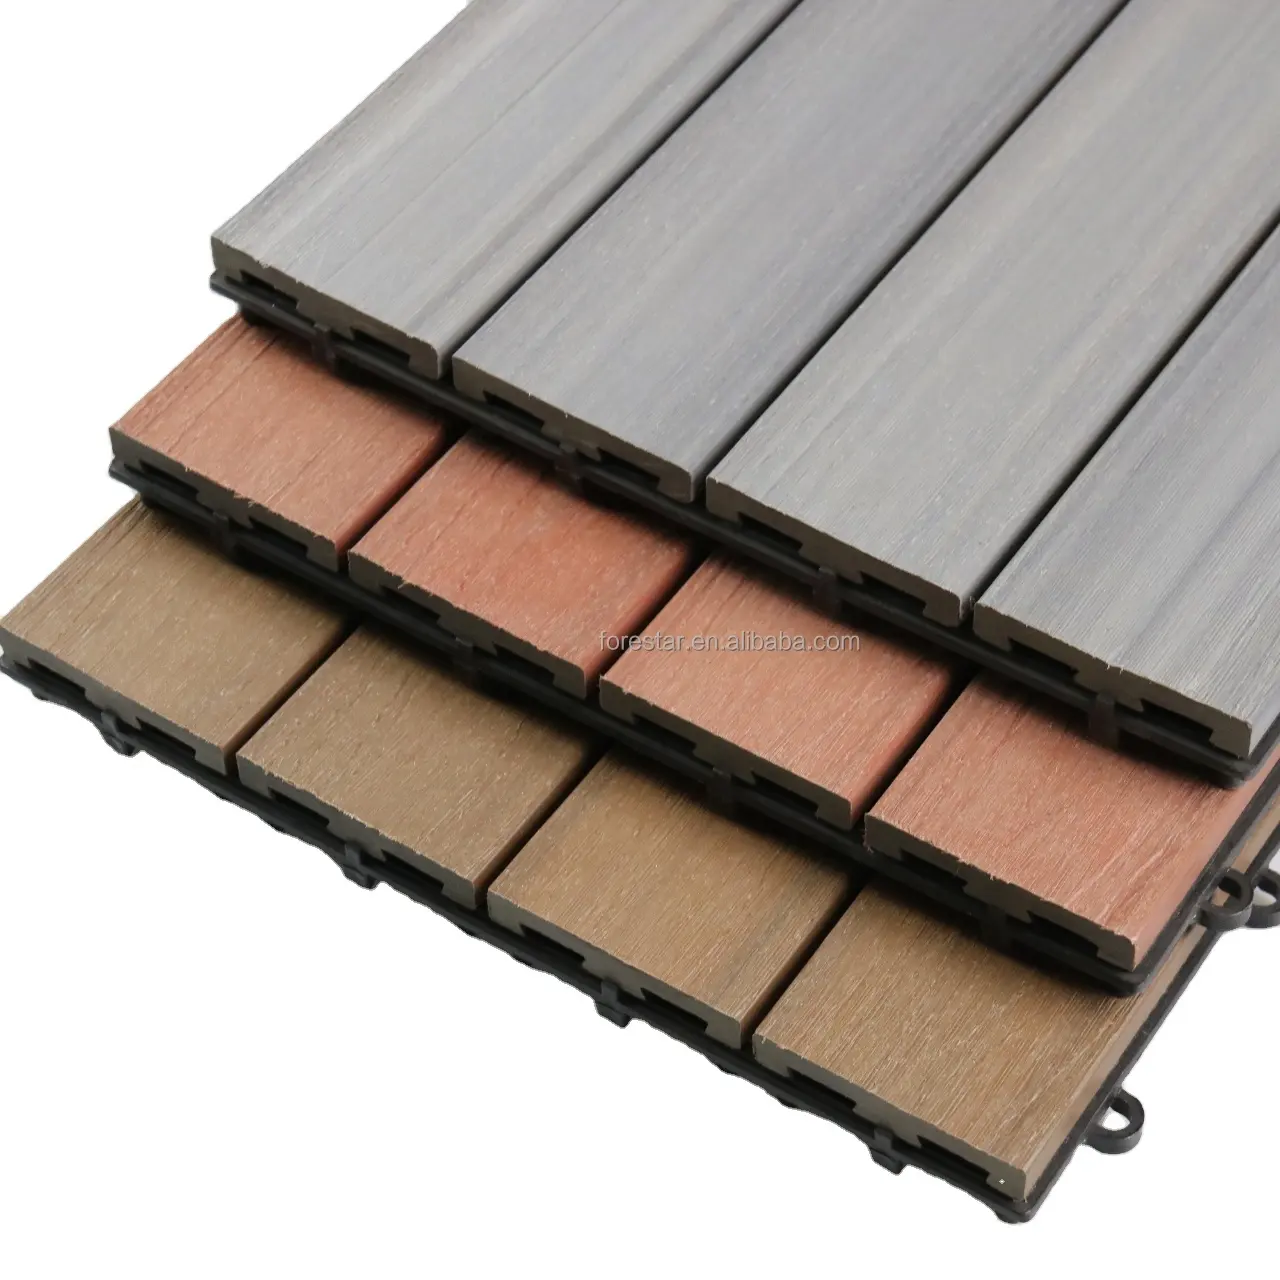 Nuovo 300*300*22 Wpc Decking pavimenti in legno di Teak legno composito di plastica piastrelle in legno WPC piastrelle fai da te